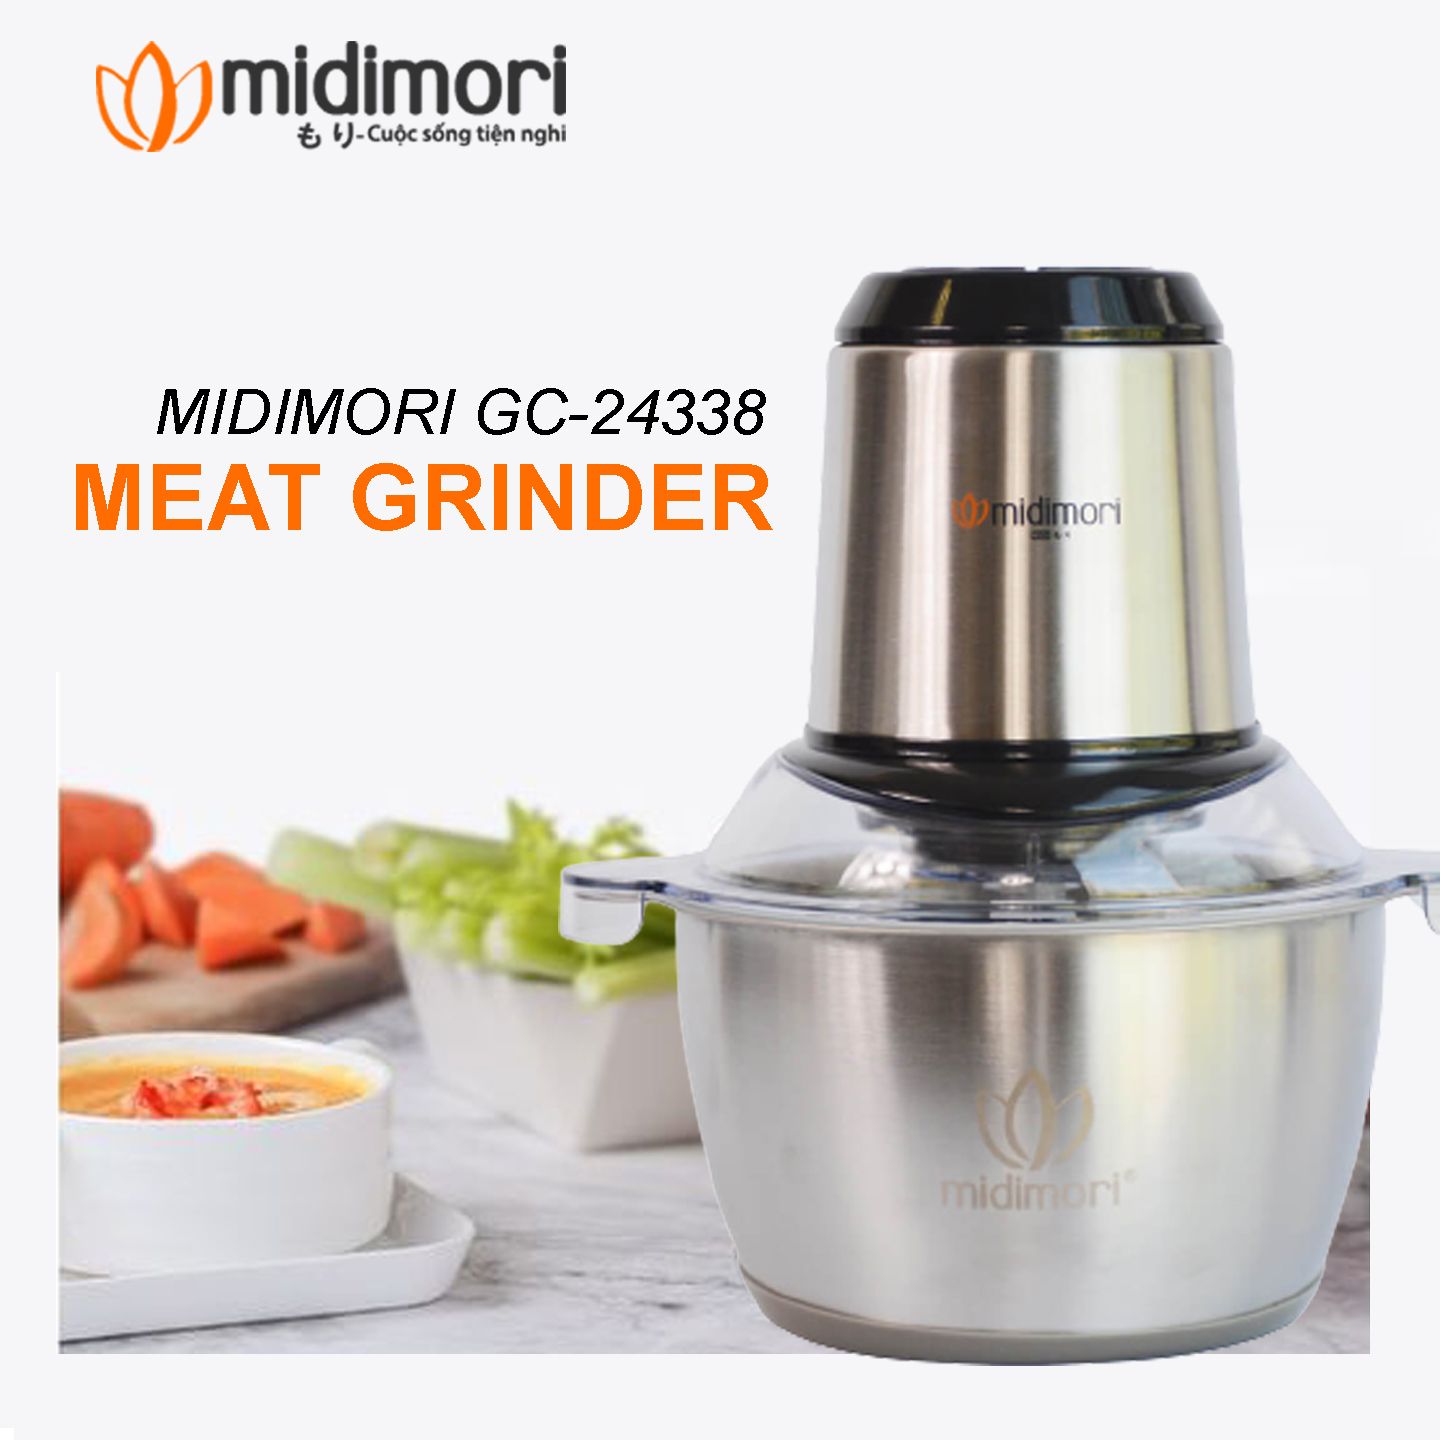  Combo Máy Làm Sữa Hạt Đa Năng Midimori MDMR-668 (1000W) Và Máy Xay Thịt Midimori GC-24338 (500W)  - Hàng Chính Hãng 